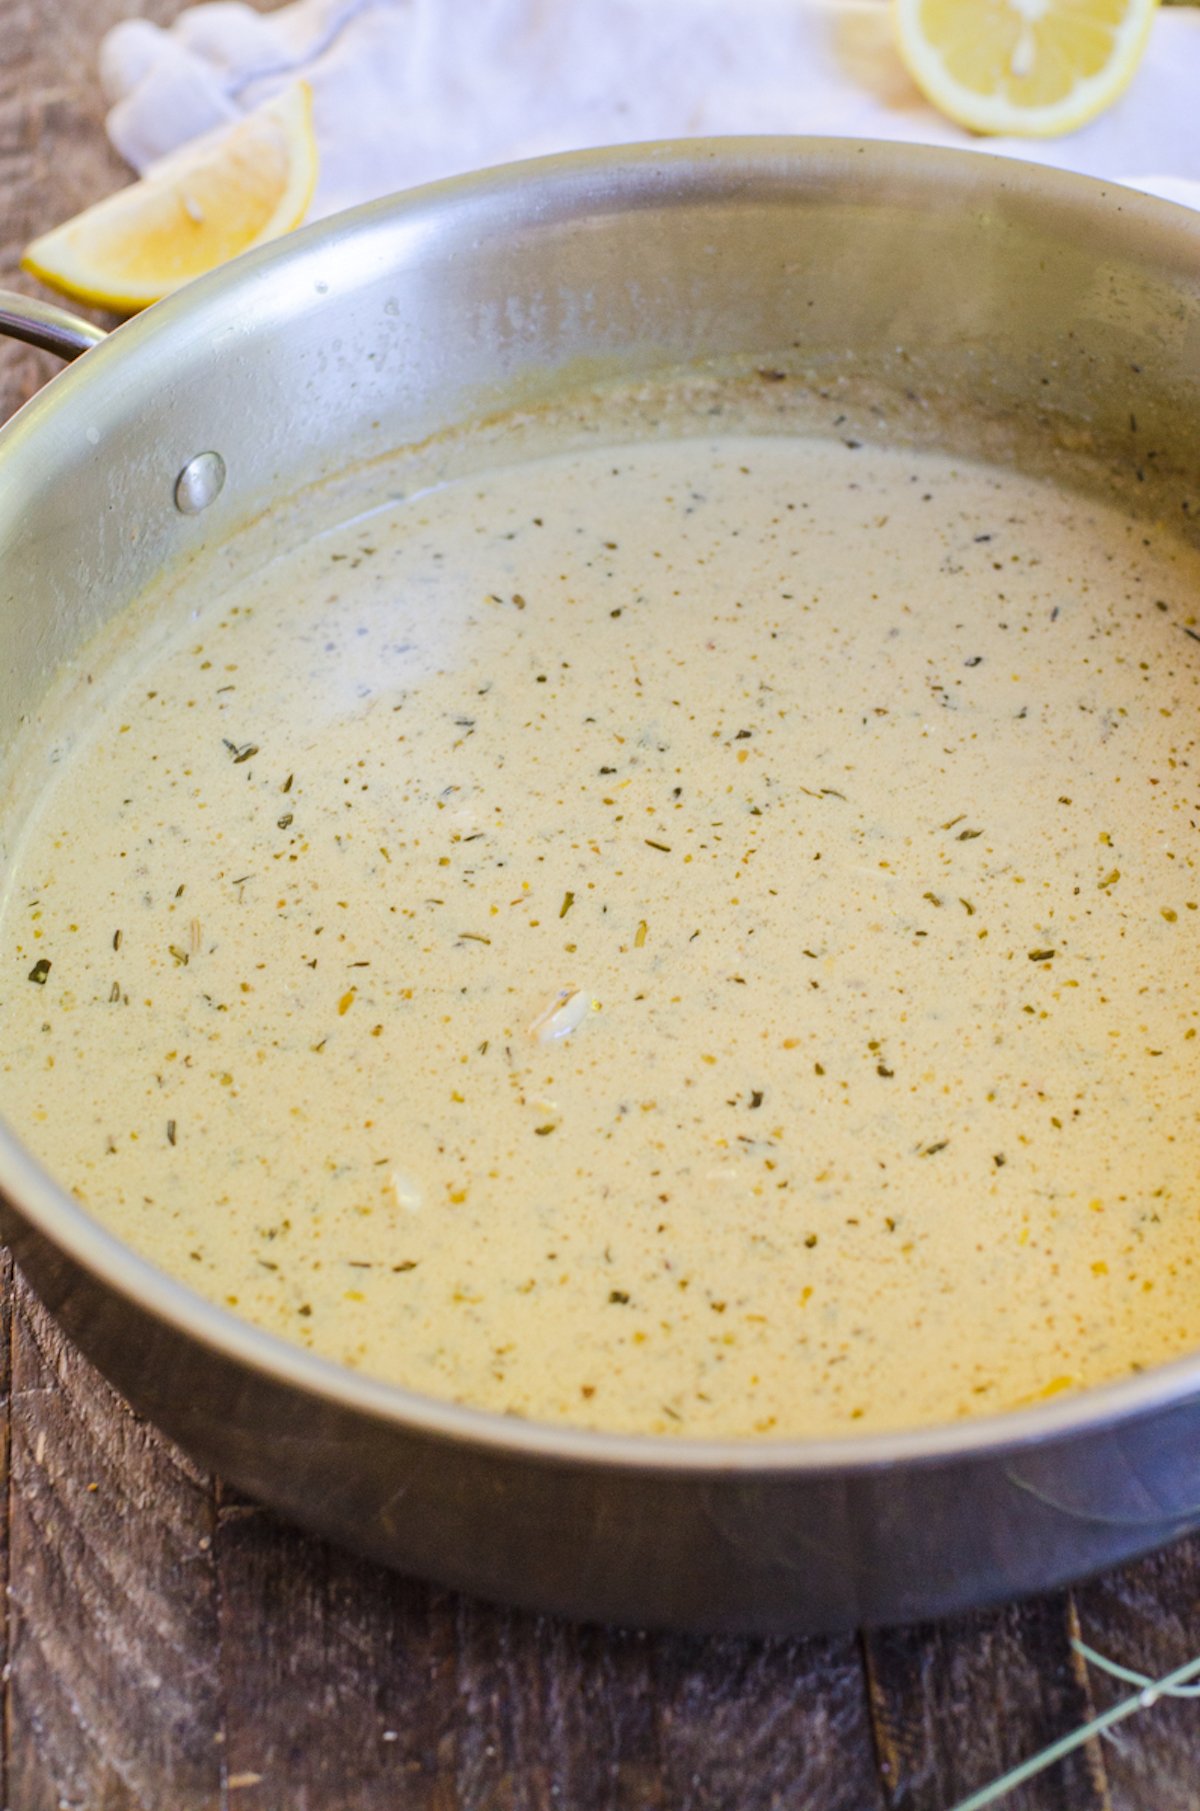 A herbs de provence lemon cream sauce in a saute pan.